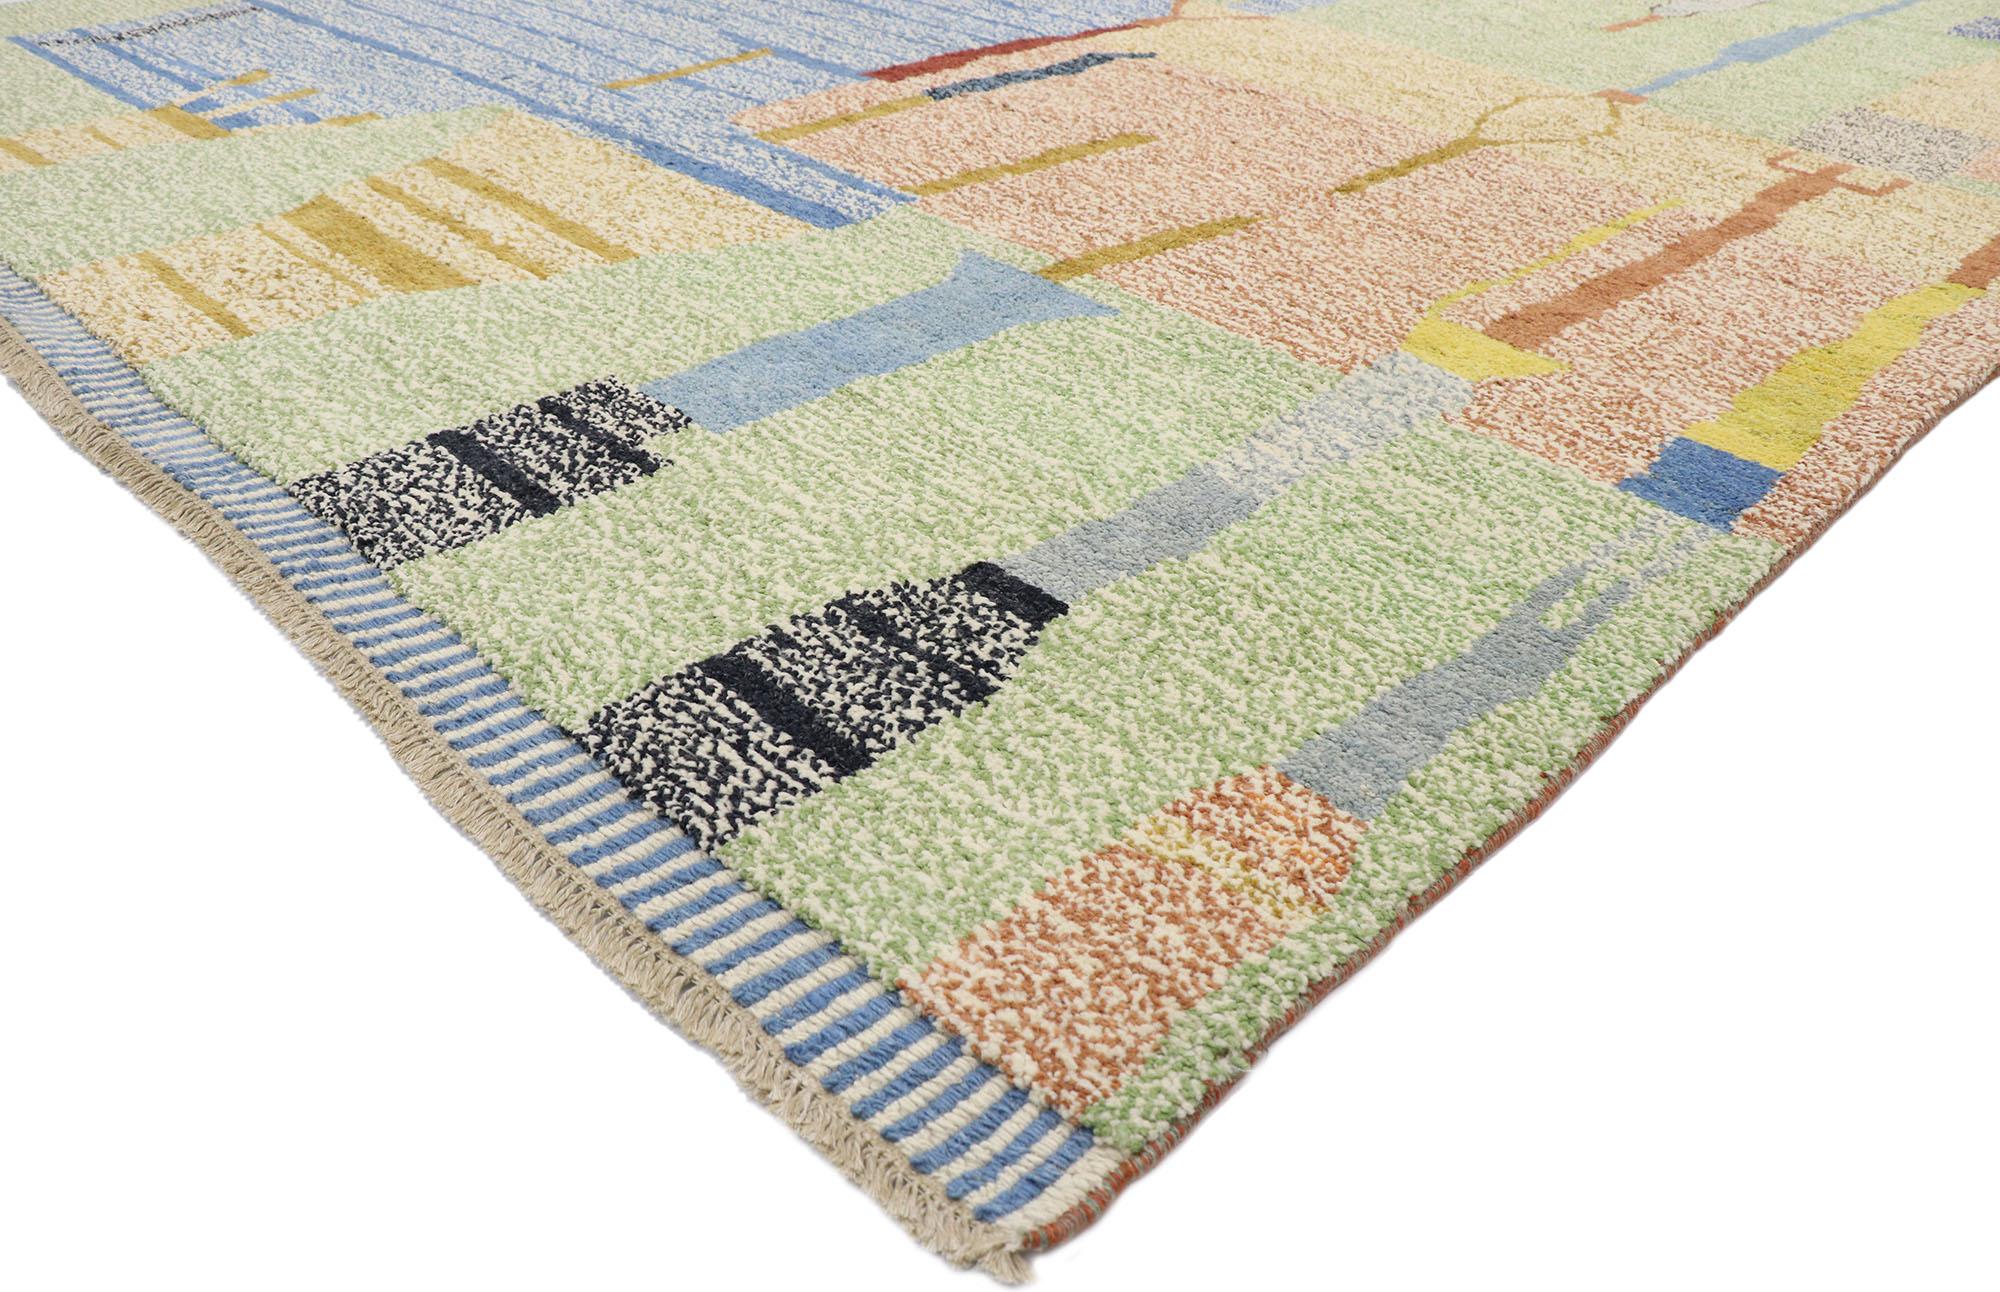 80665, nouveau tapis contemporain de style marocain avec un design abstrait postmoderne pointilliste. Ce tapis contemporain de style marocain en laine nouée à la main présente un design expressif et audacieux, ainsi que des détails et une texture